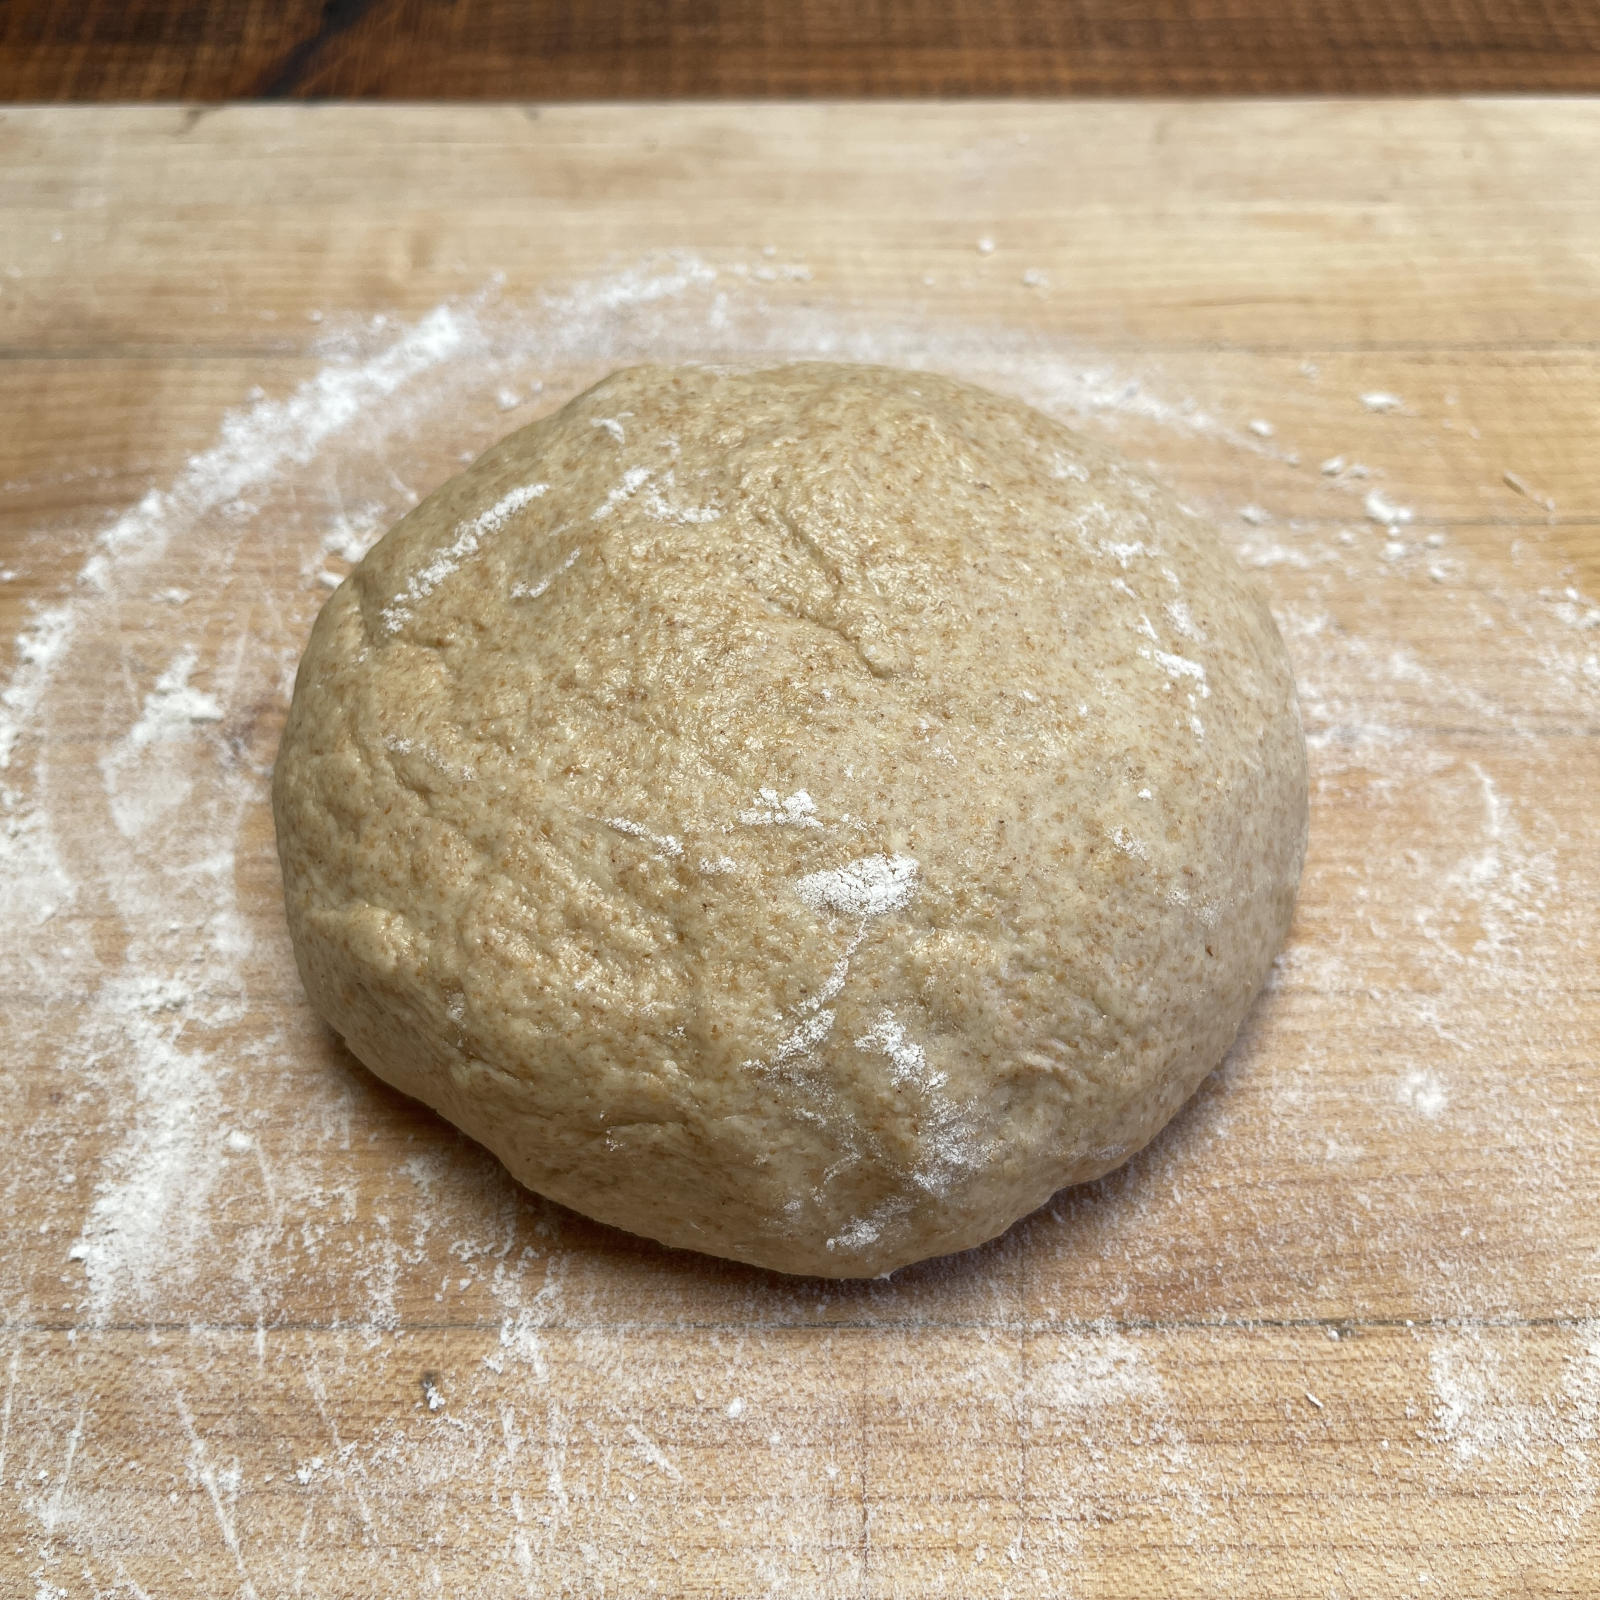 https://zerowastechef.com/wp-content/uploads/2023/06/06.22.22-smooth-tortilla-dough-ball-on-wooden-board.jpg